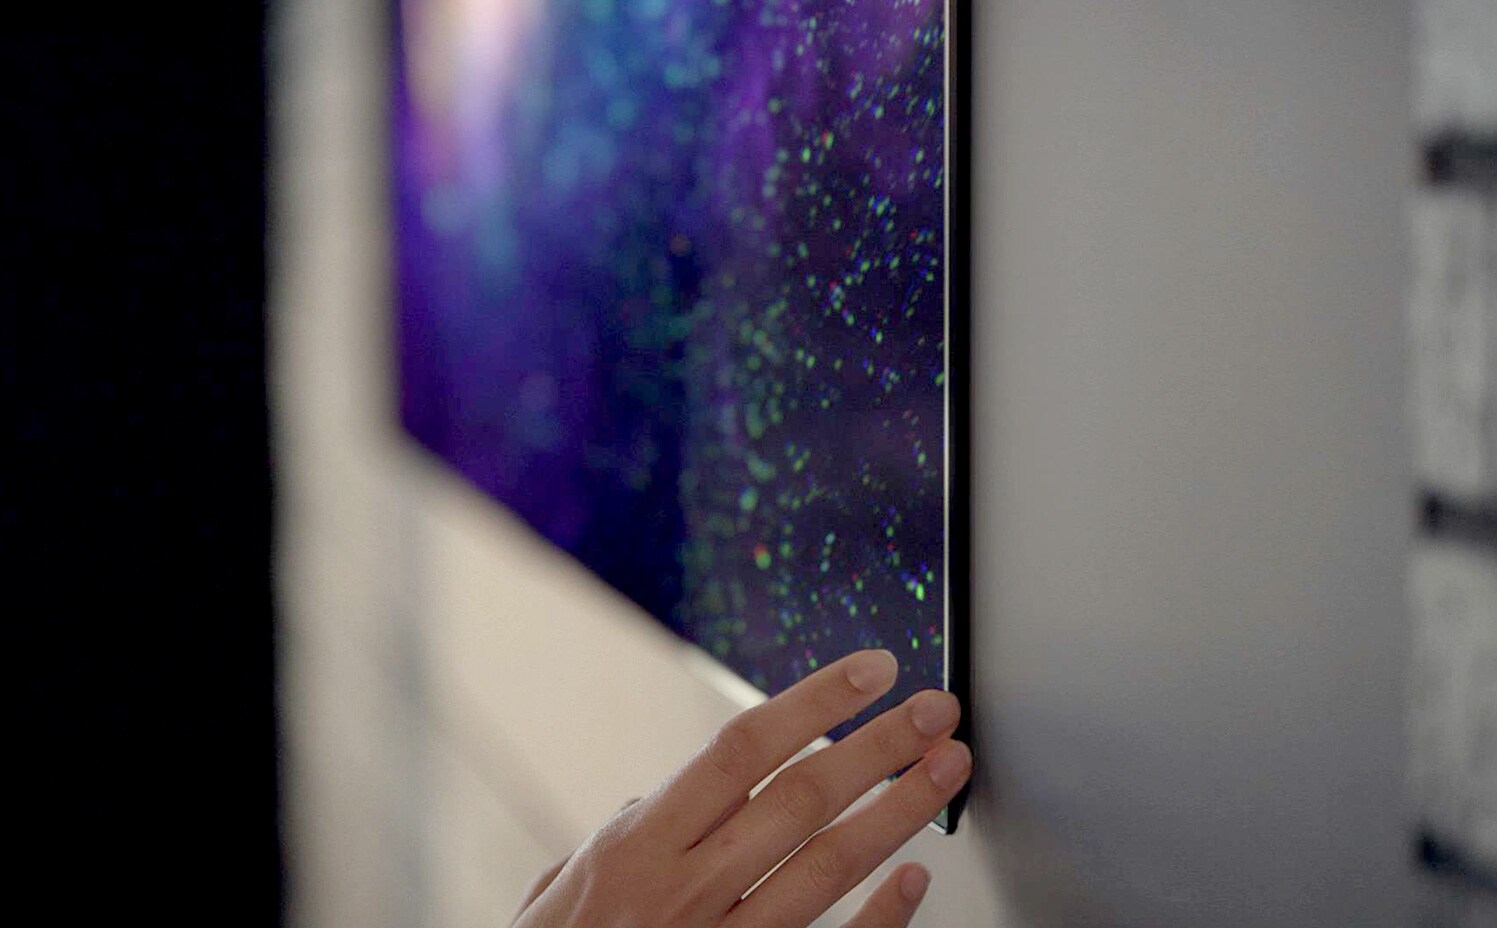 Крупный план руки у кромки телевизора Gallery Design. Ясно видно его точное прилегание к стене.